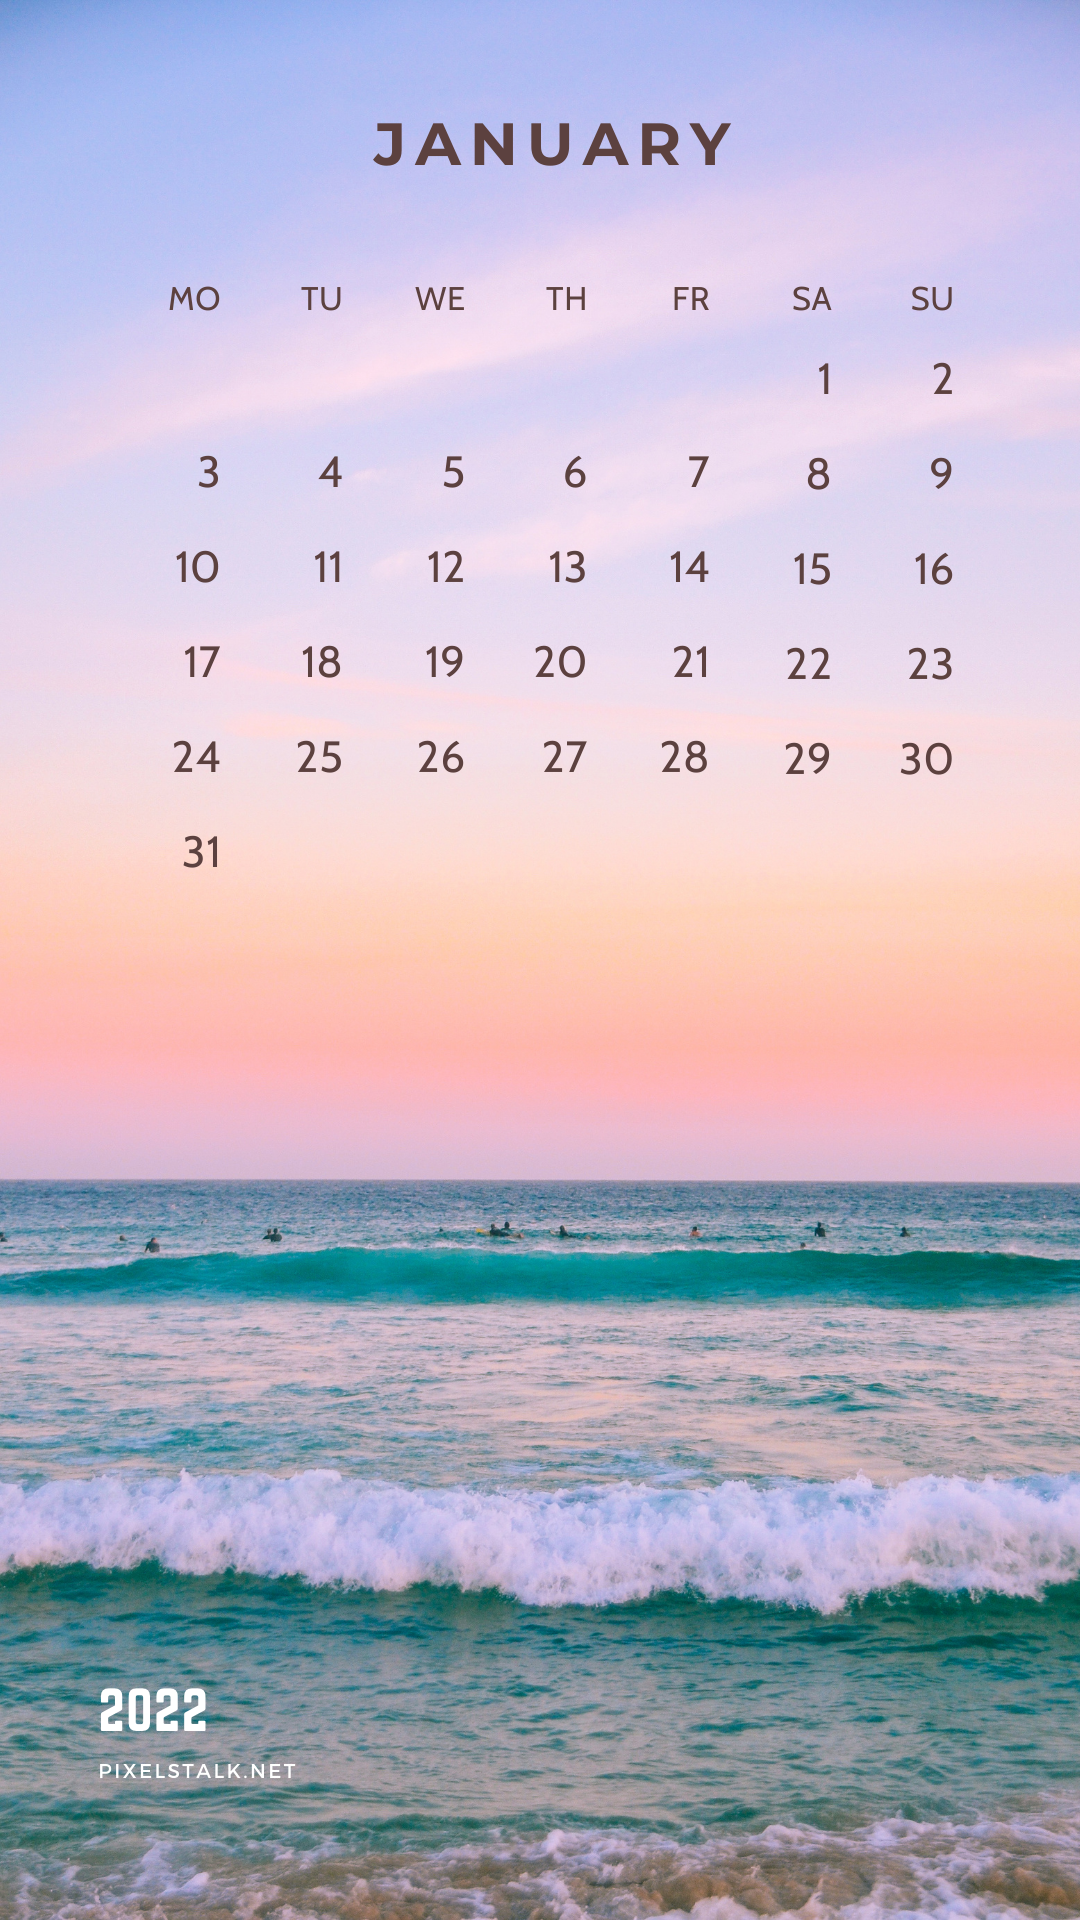 Lịch tháng: Hãy bắt đầu ngày mới của bạn với một chiếc lịch tháng đầy đủ và tiện dụng. Chúng tôi cung cấp những bộ lịch tháng được thiết kế đẹp mắt với nhiều chủ đề khác nhau để bạn có thể lựa chọn phù hợp với sở thích của mình. Hãy để chúng tôi giúp bạn quản lý thời gian một cách triệt để và hiệu quả hơn. 